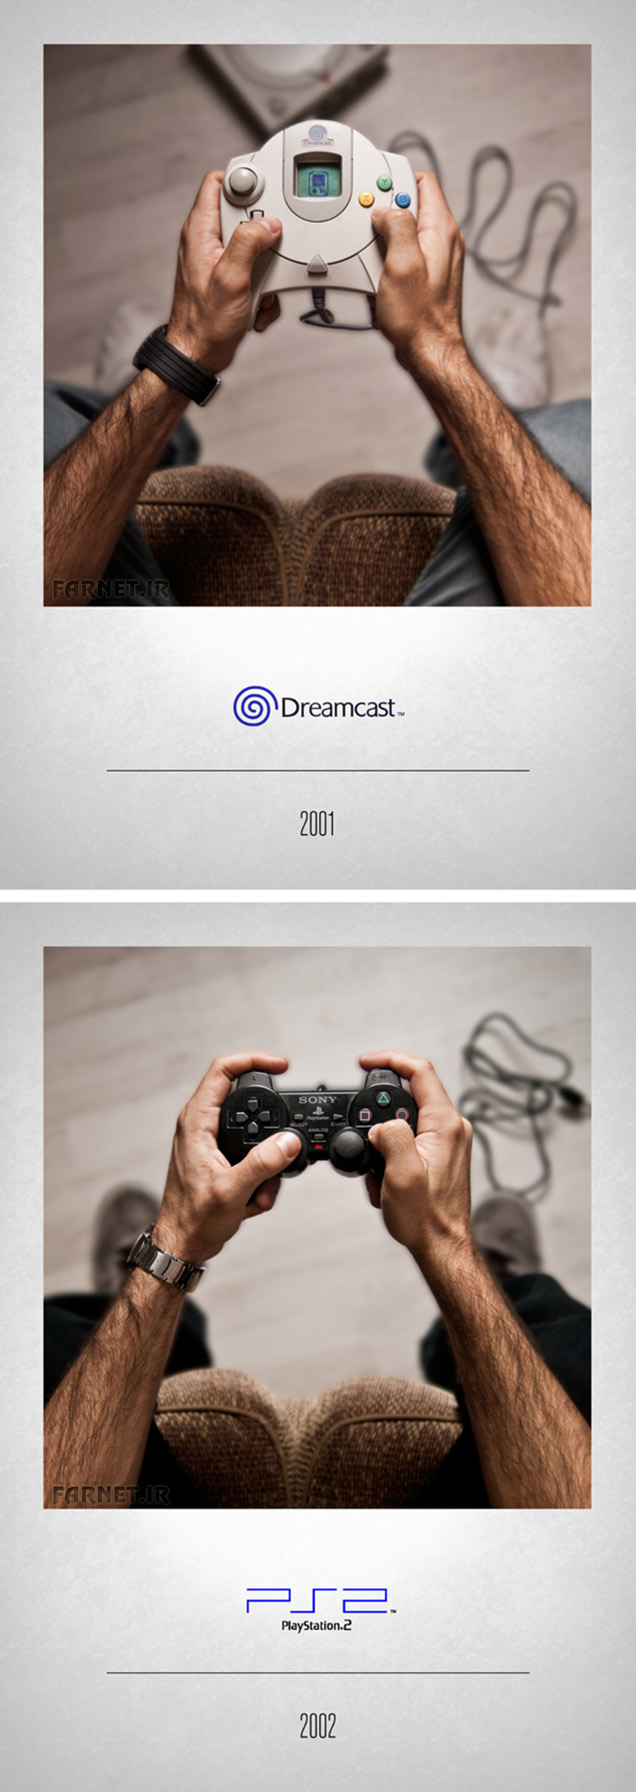 DreamCast-PS2